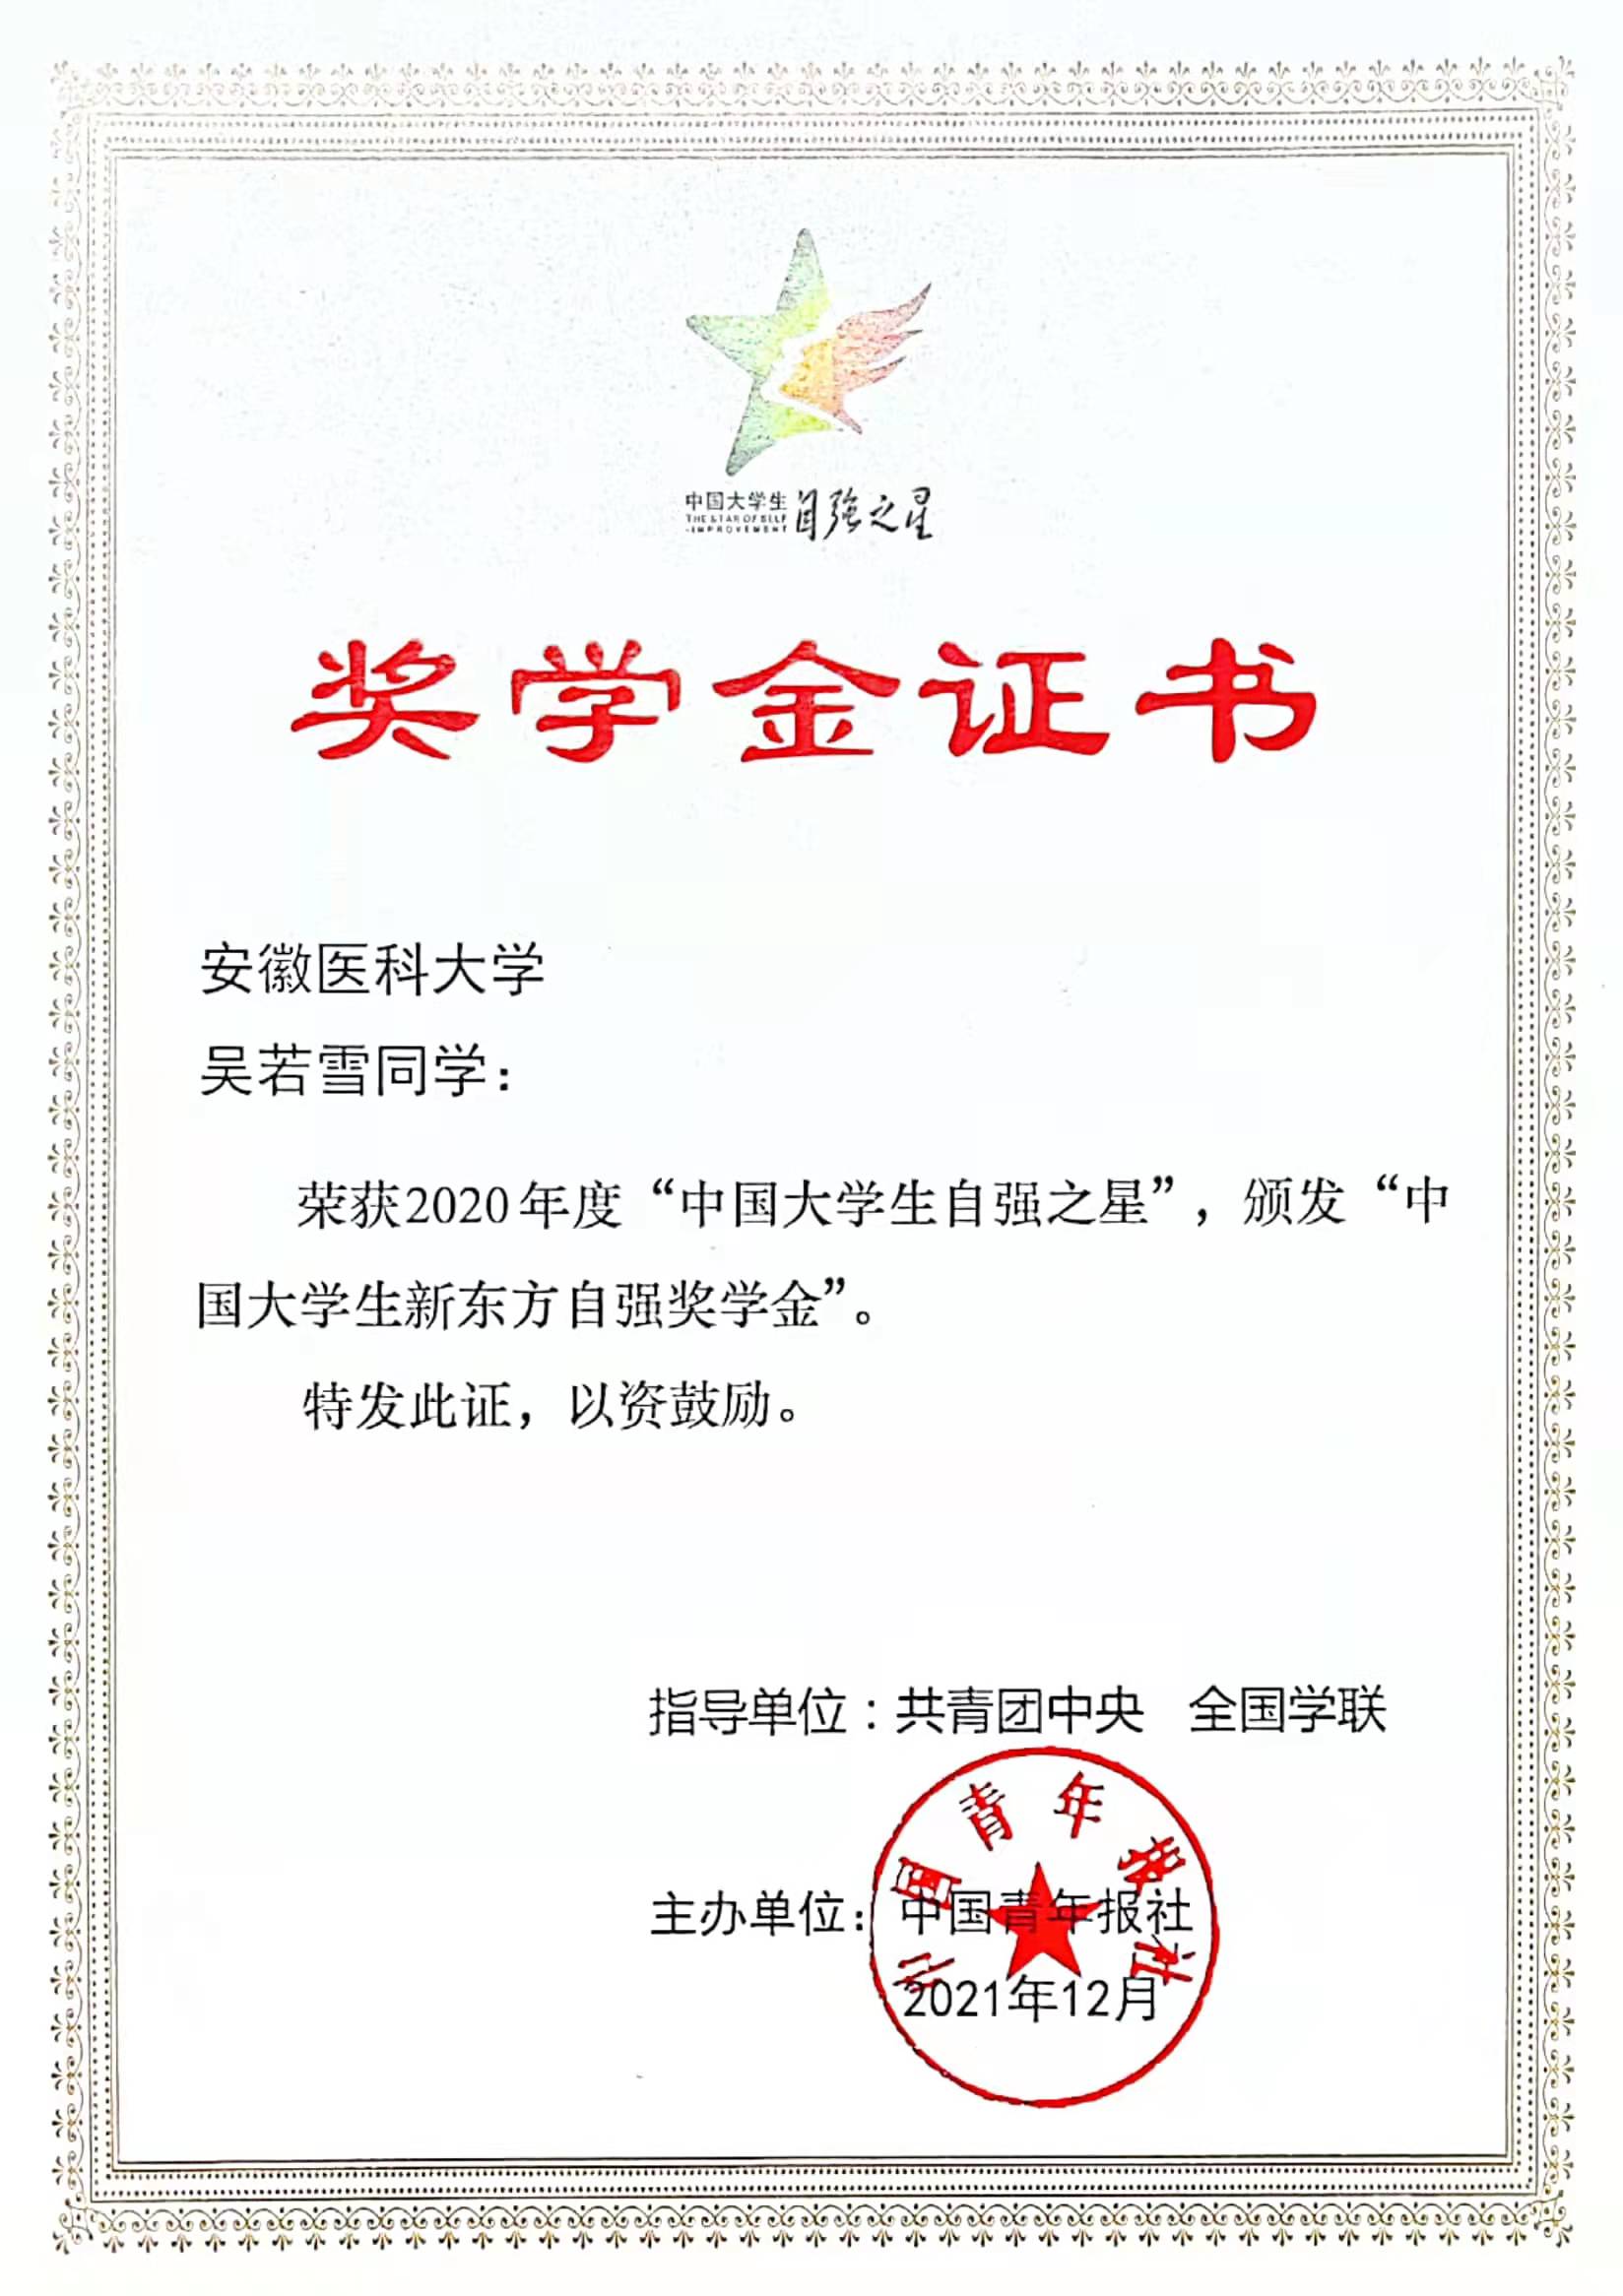 中国大学生自强之星证书.png